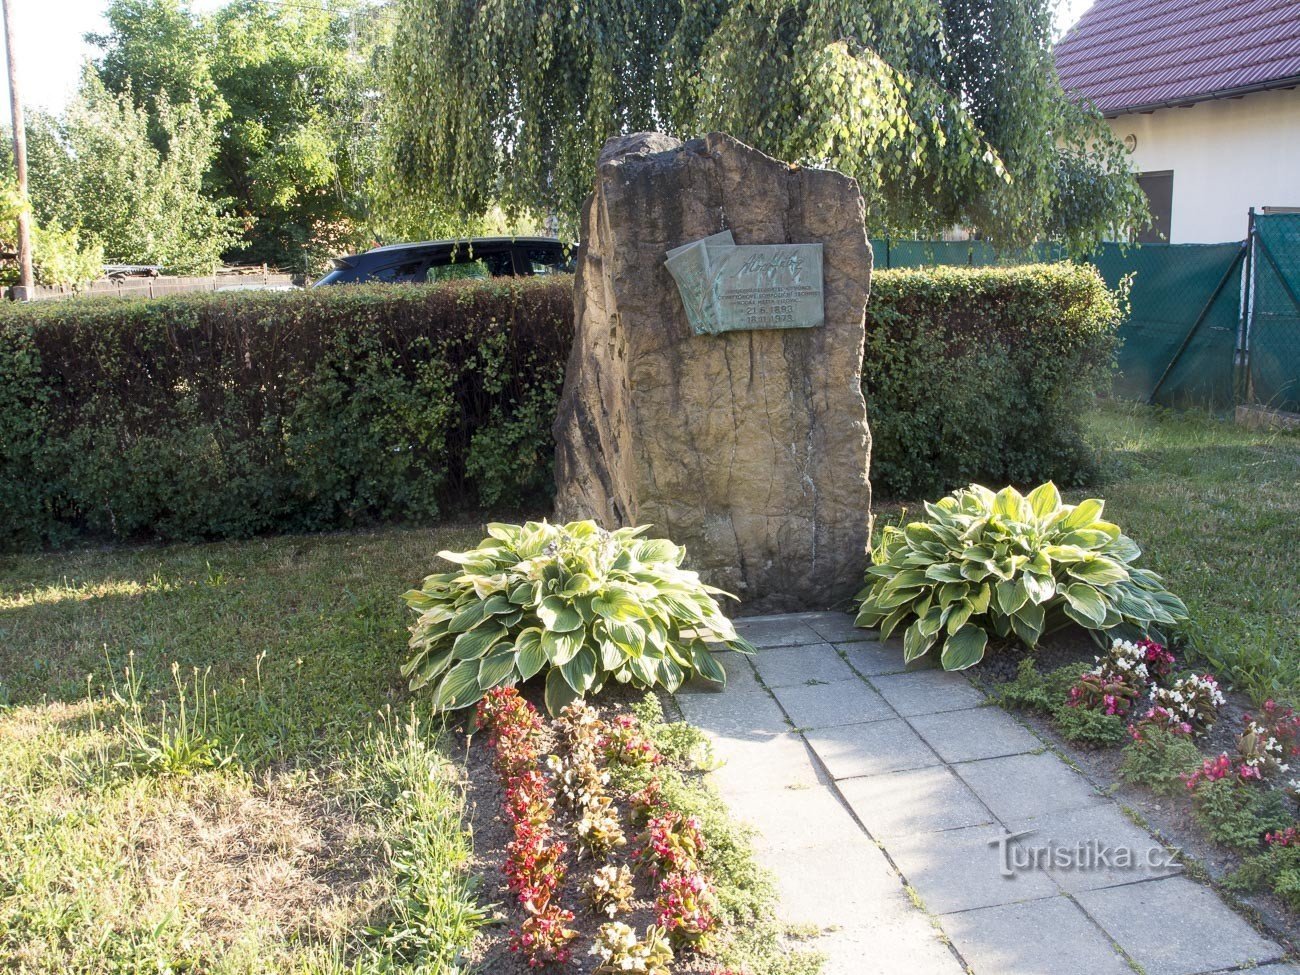 Vizovice - monument to Alois Hába